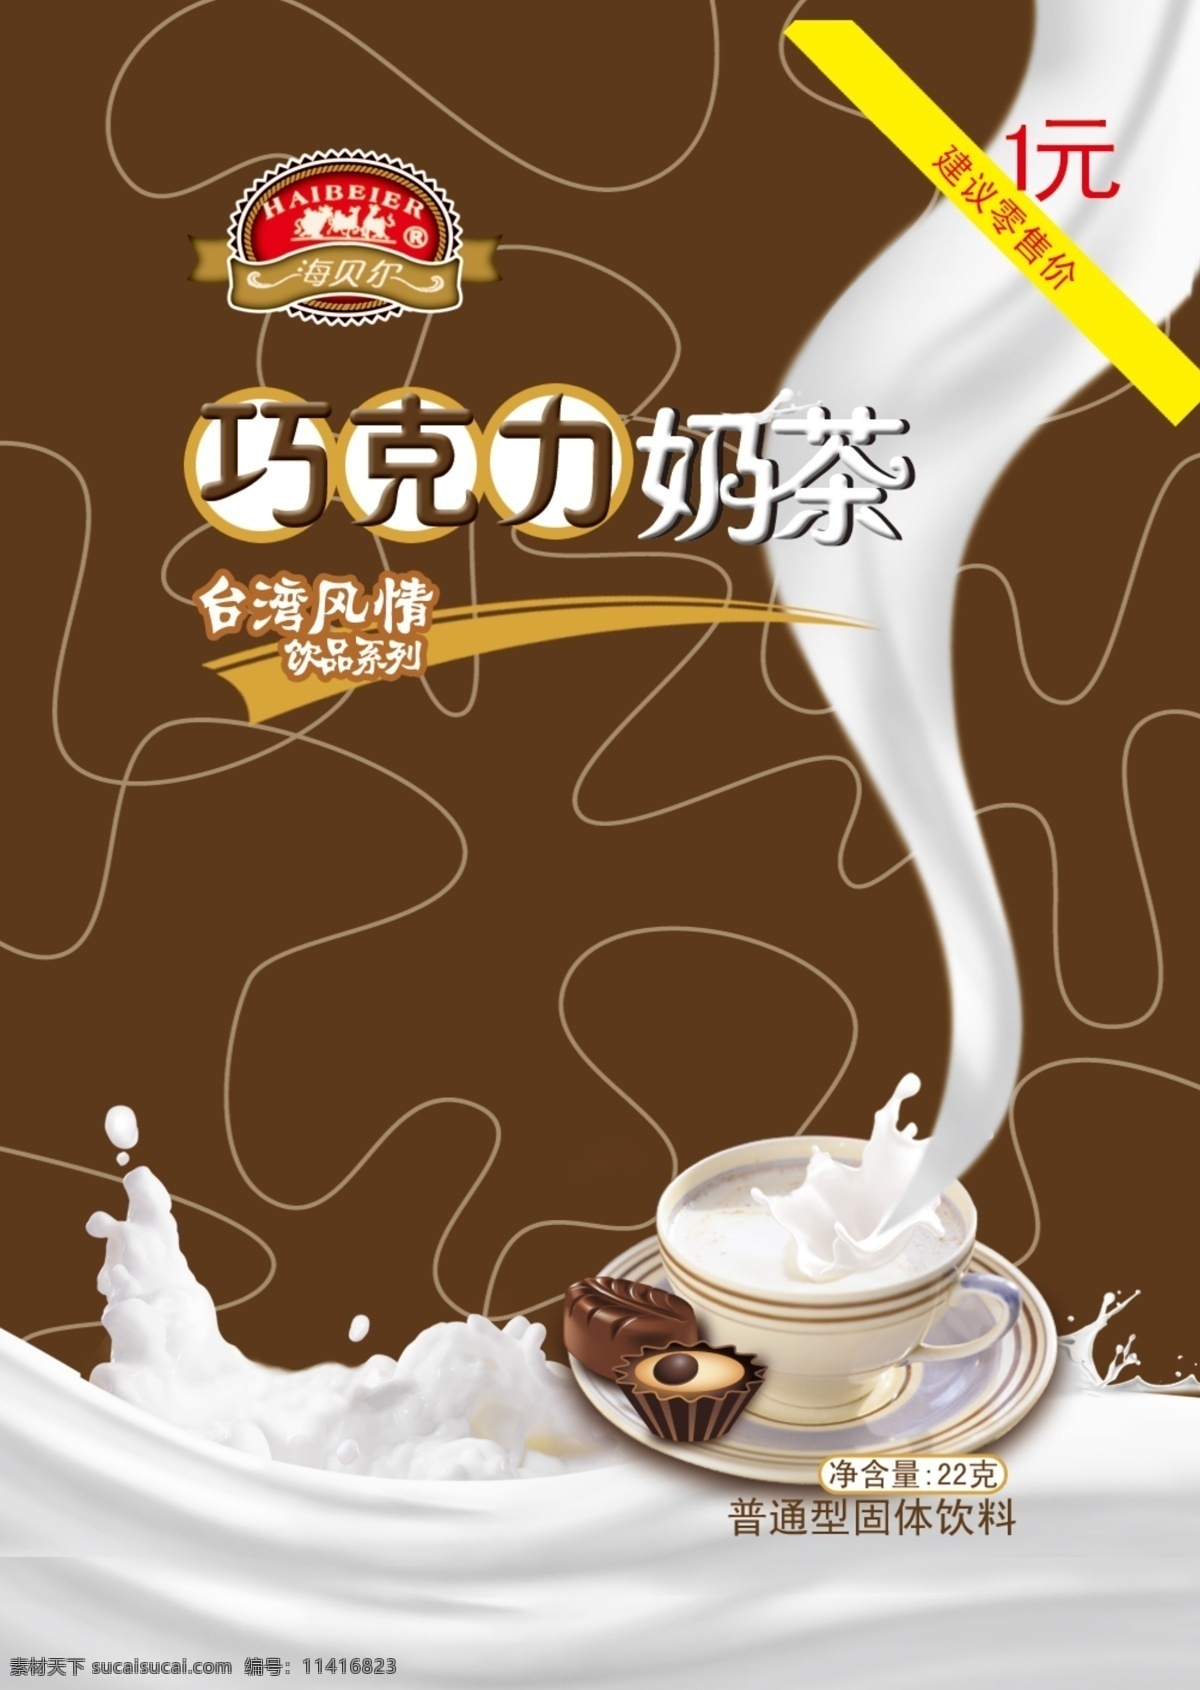 奶茶包装 巧克力 包装 奶花 牛奶 1元 零售价 净含量 台湾风情 咖啡色 深咖色 线条 食品 图标 包装设计 广告设计模板 源文件